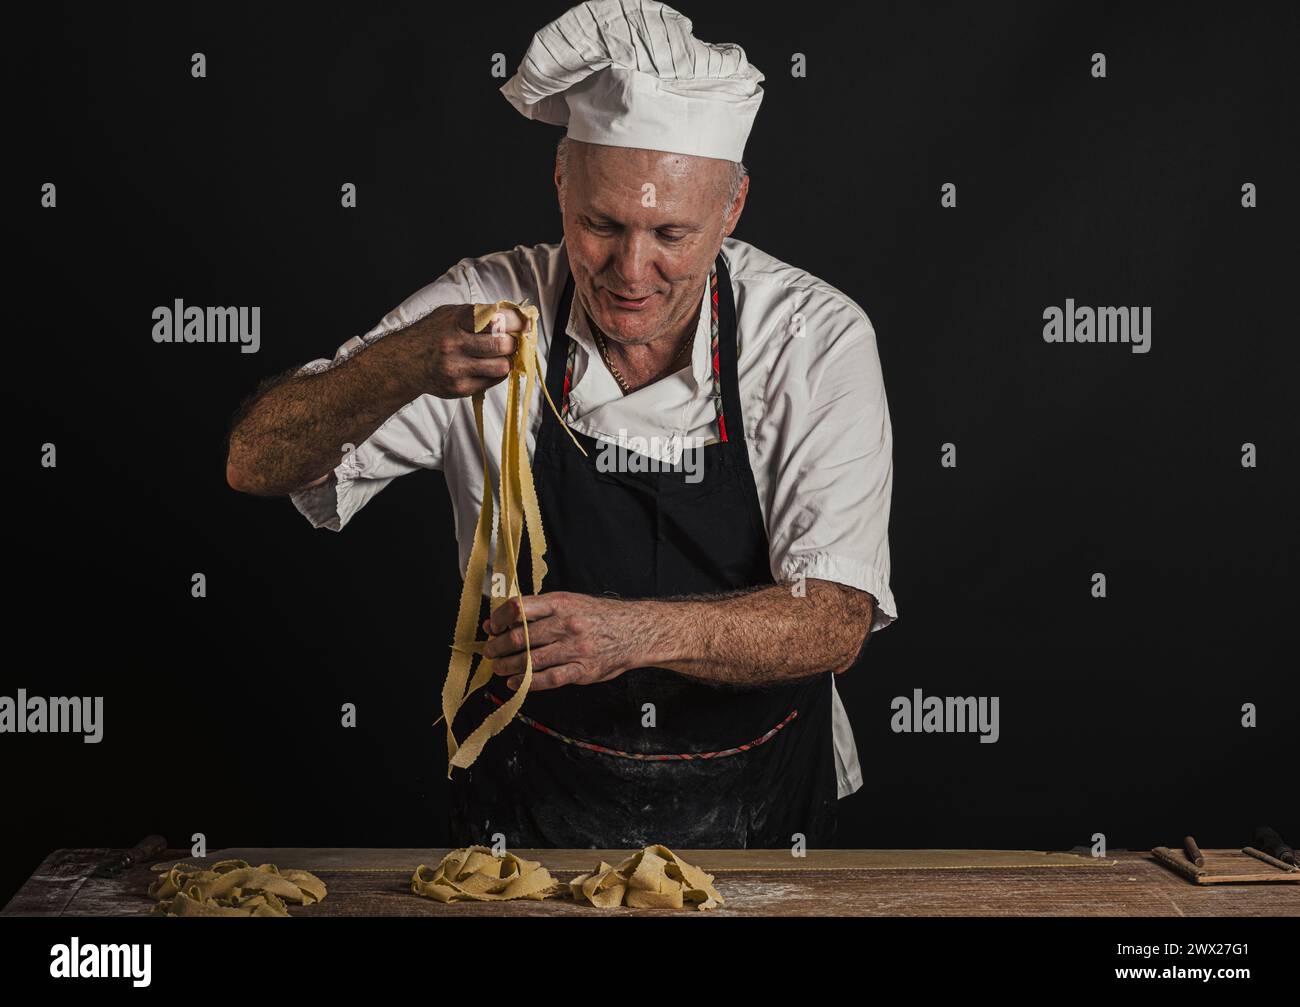 Der Italiener liebt handgemachte Pasta Stockfoto